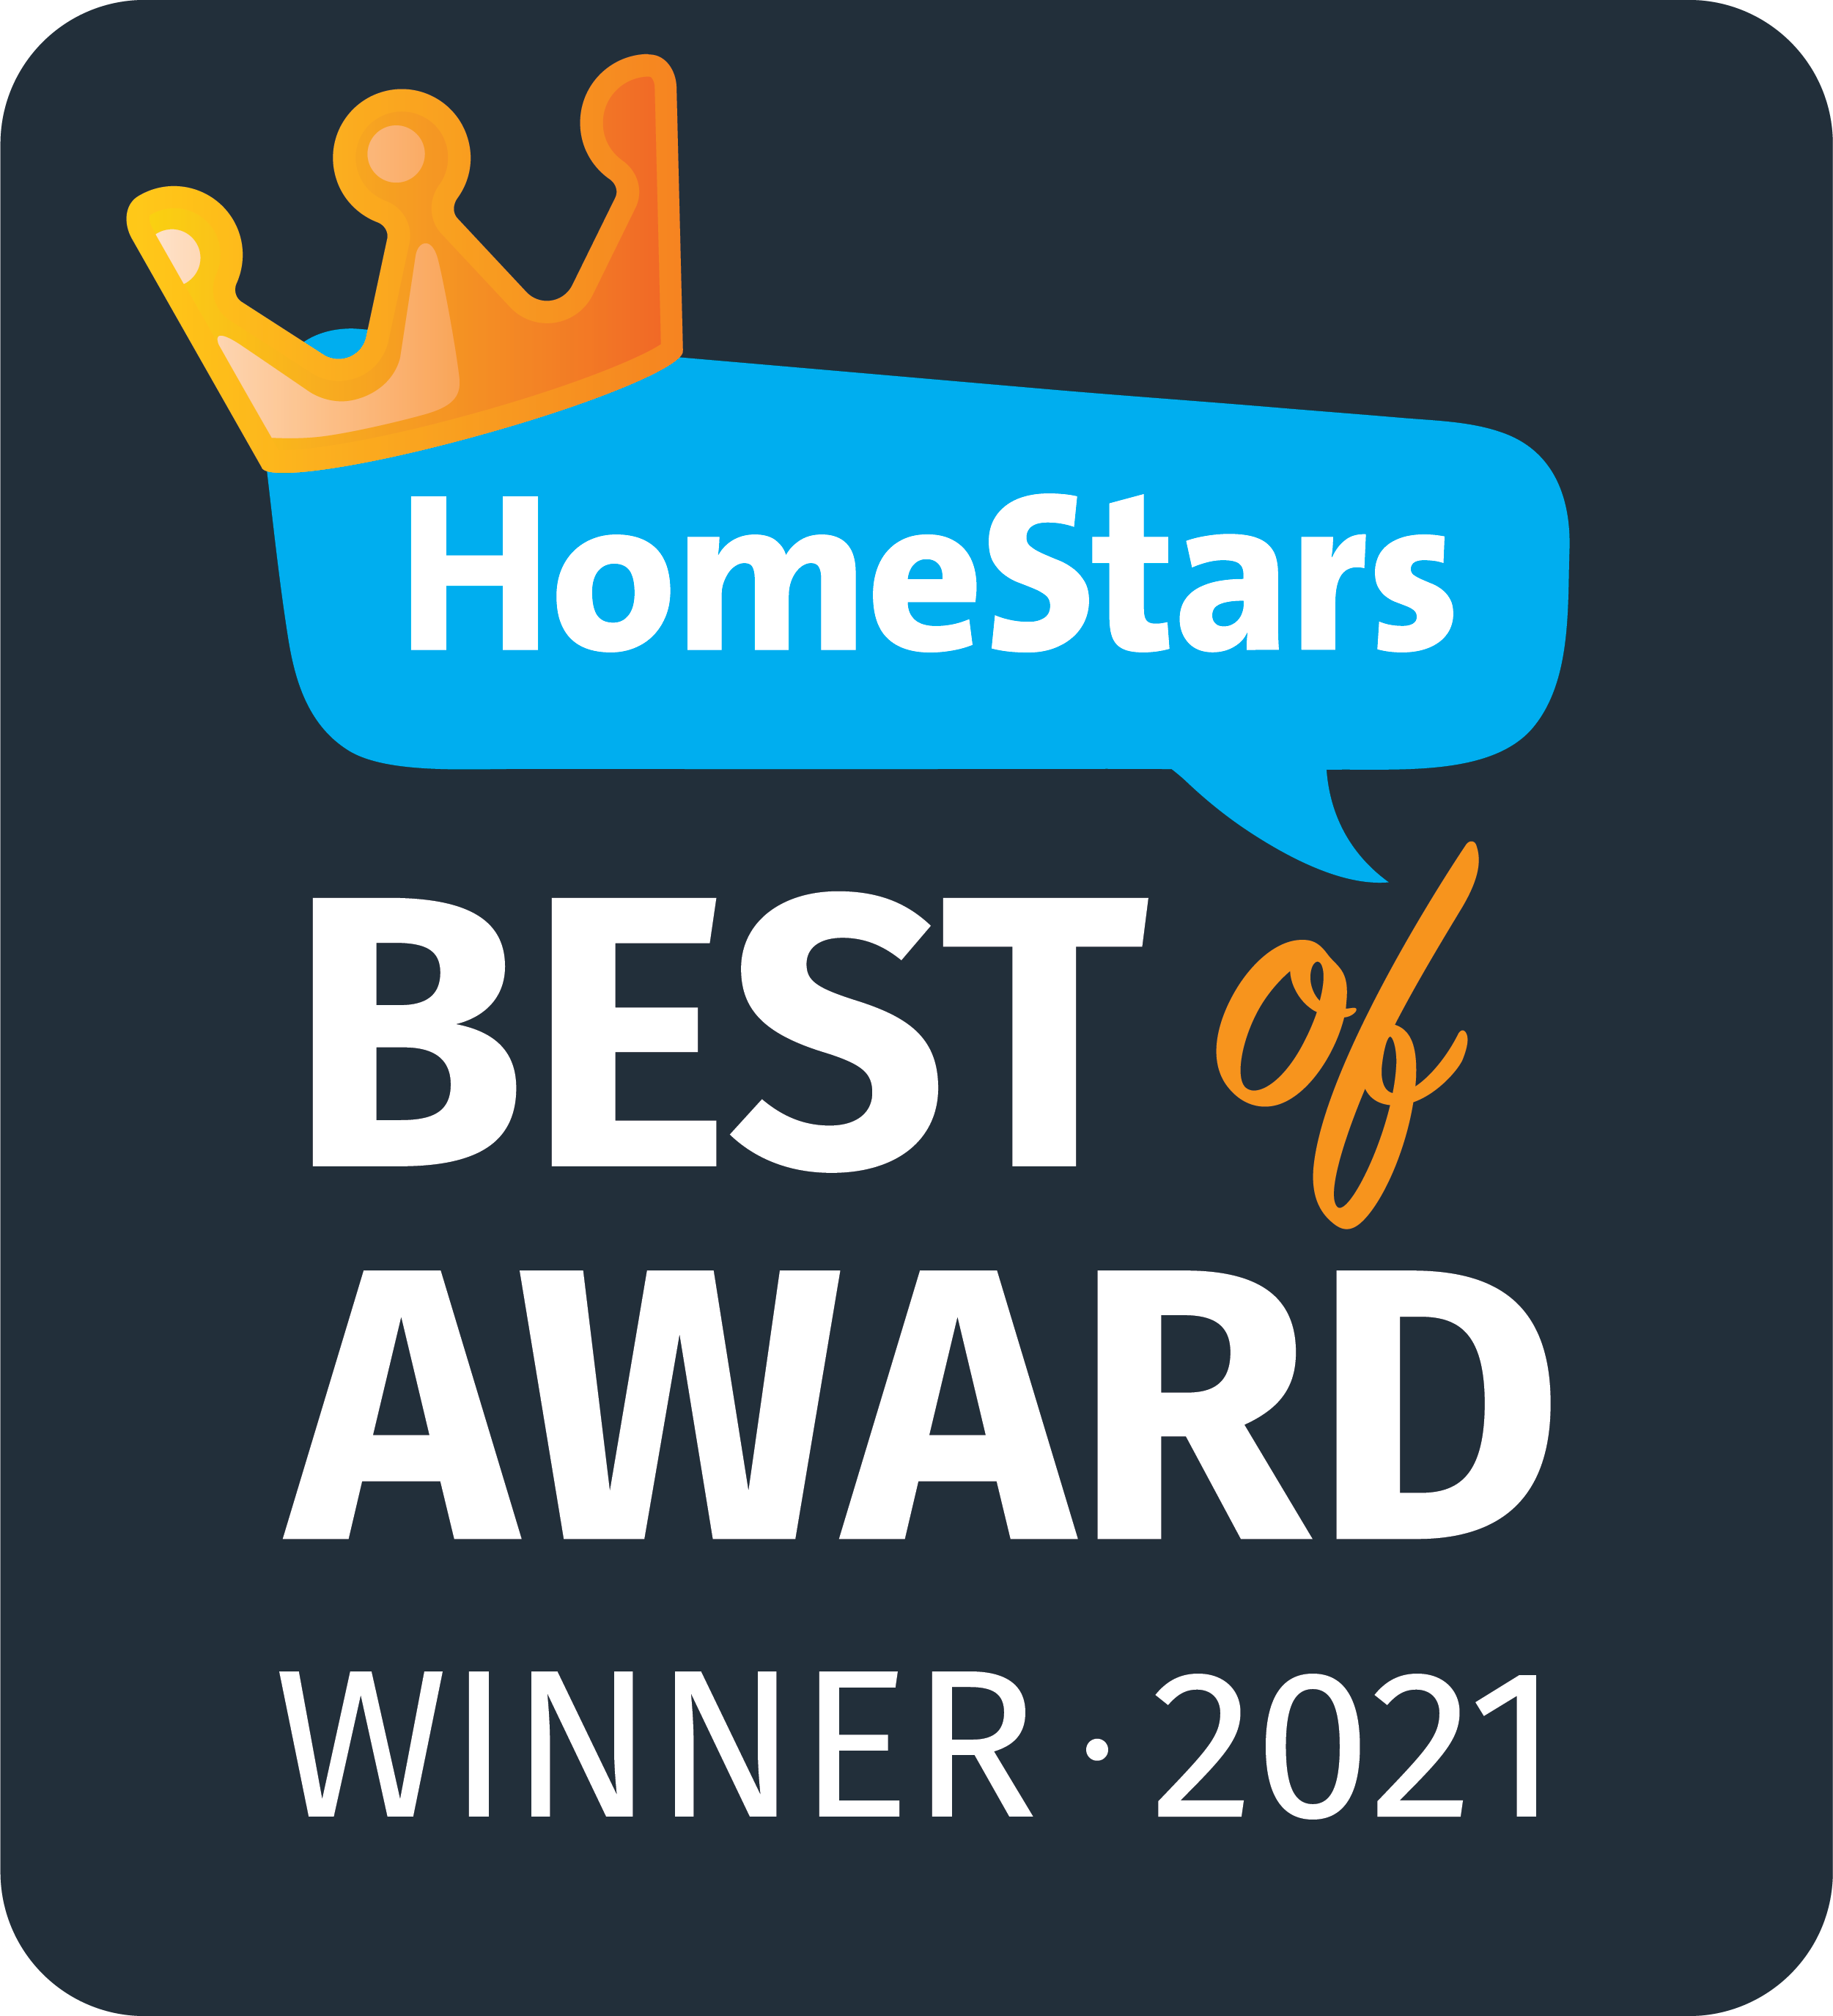 The badge we got for winning HomeStars Best of award for 2019!